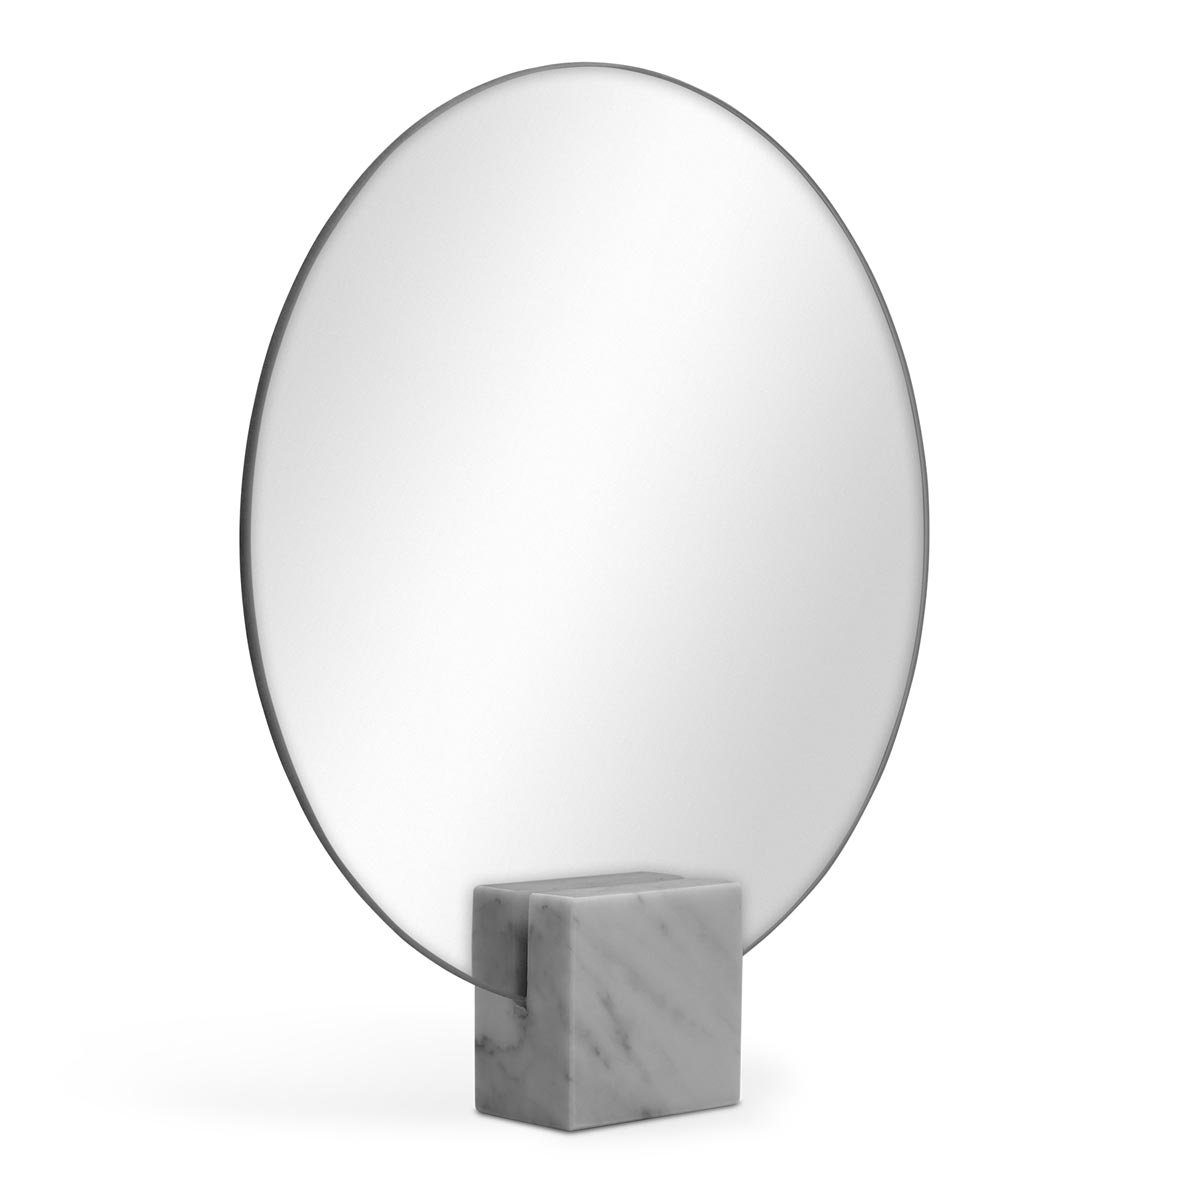 PHOTOLINI Spiegel mit Marmor-Standfuß, modernes Design, Tischspiegel rund 30 cm | Spiegel